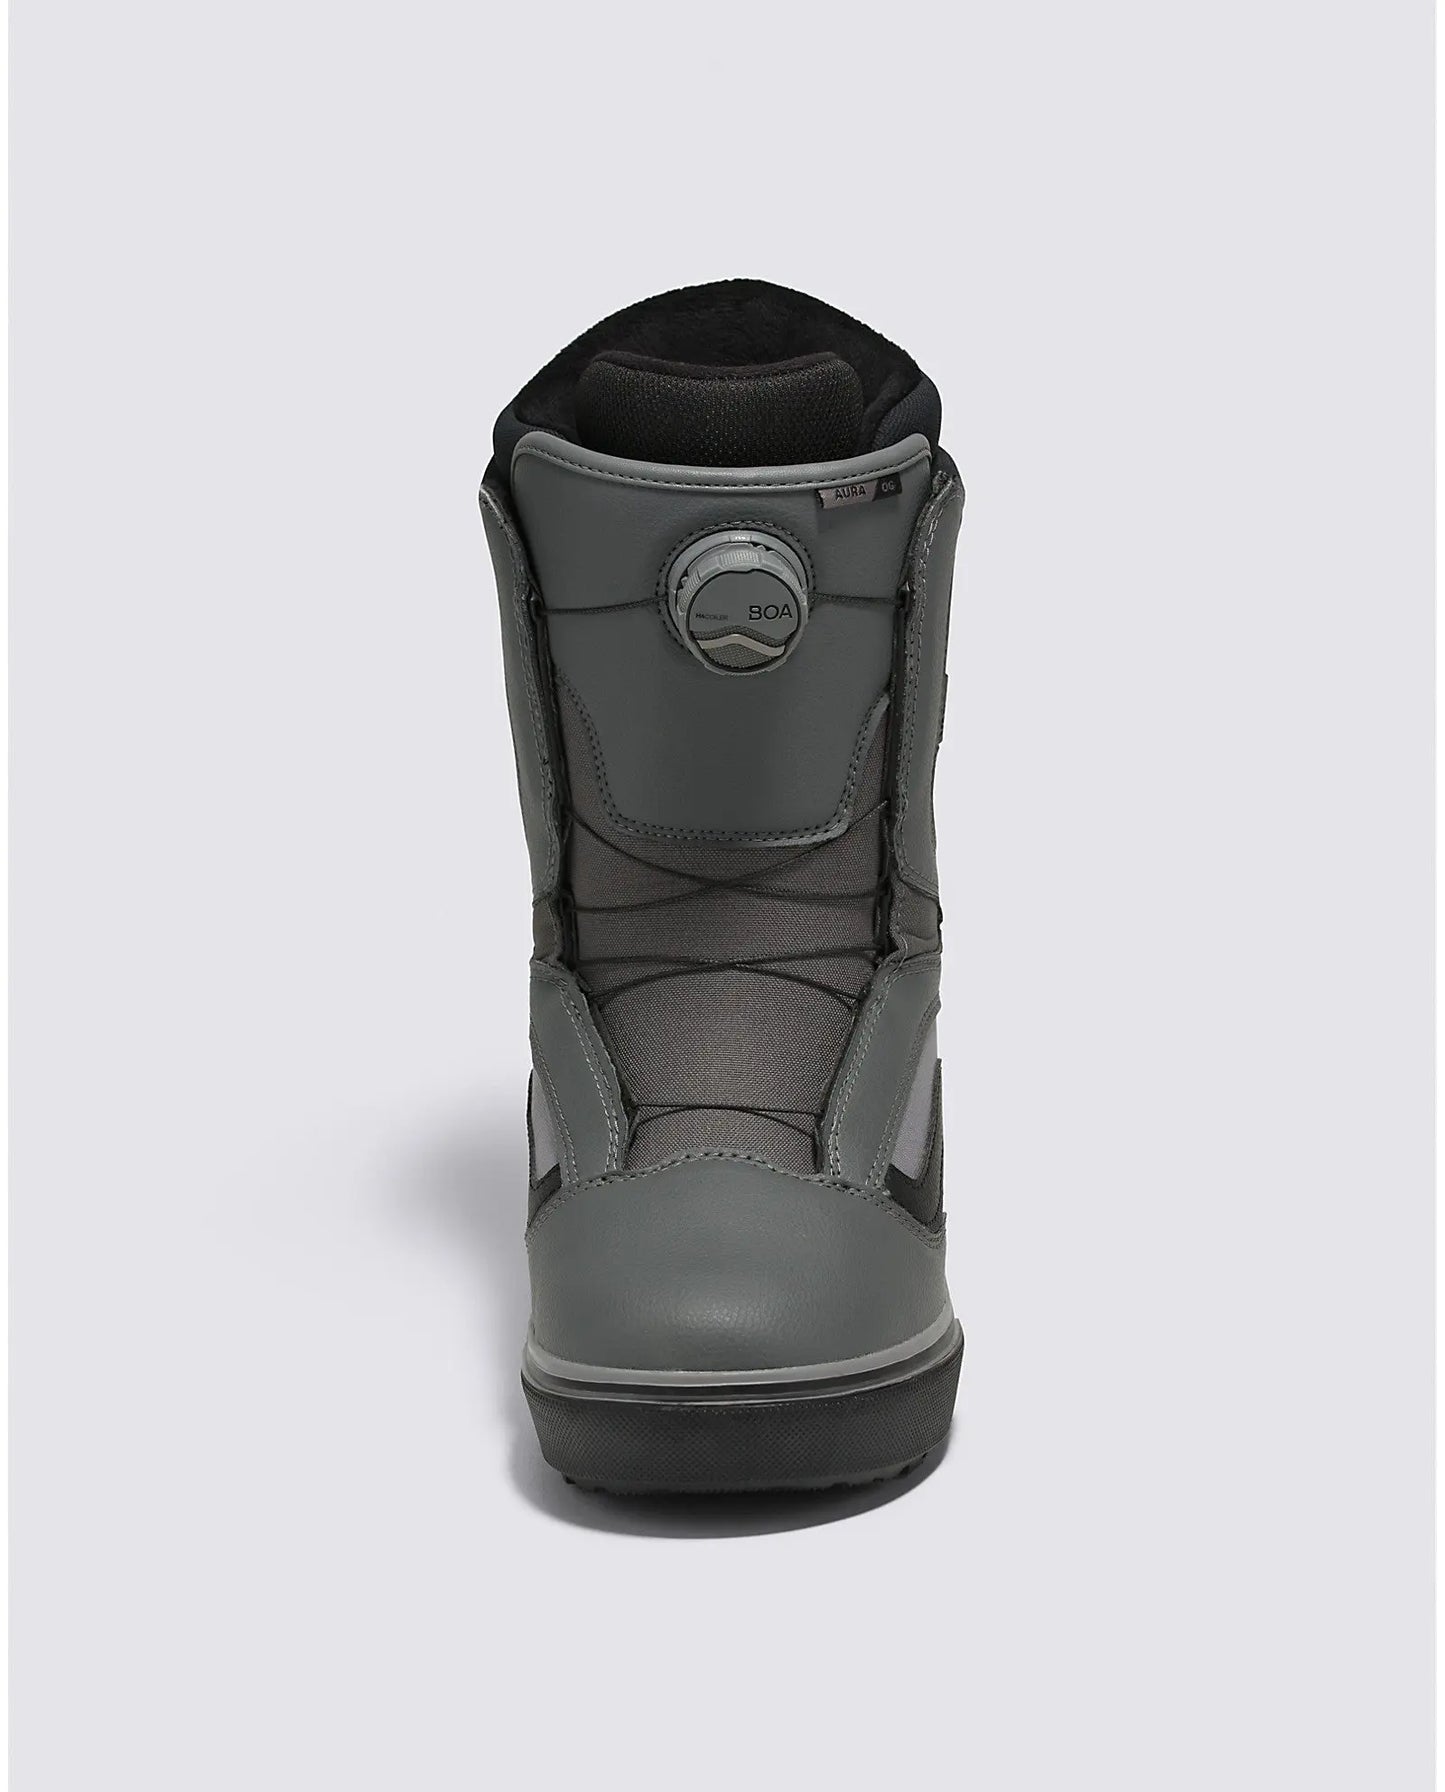 Vans Aura OG Snowboard Boots - Pewter/Blk VANS